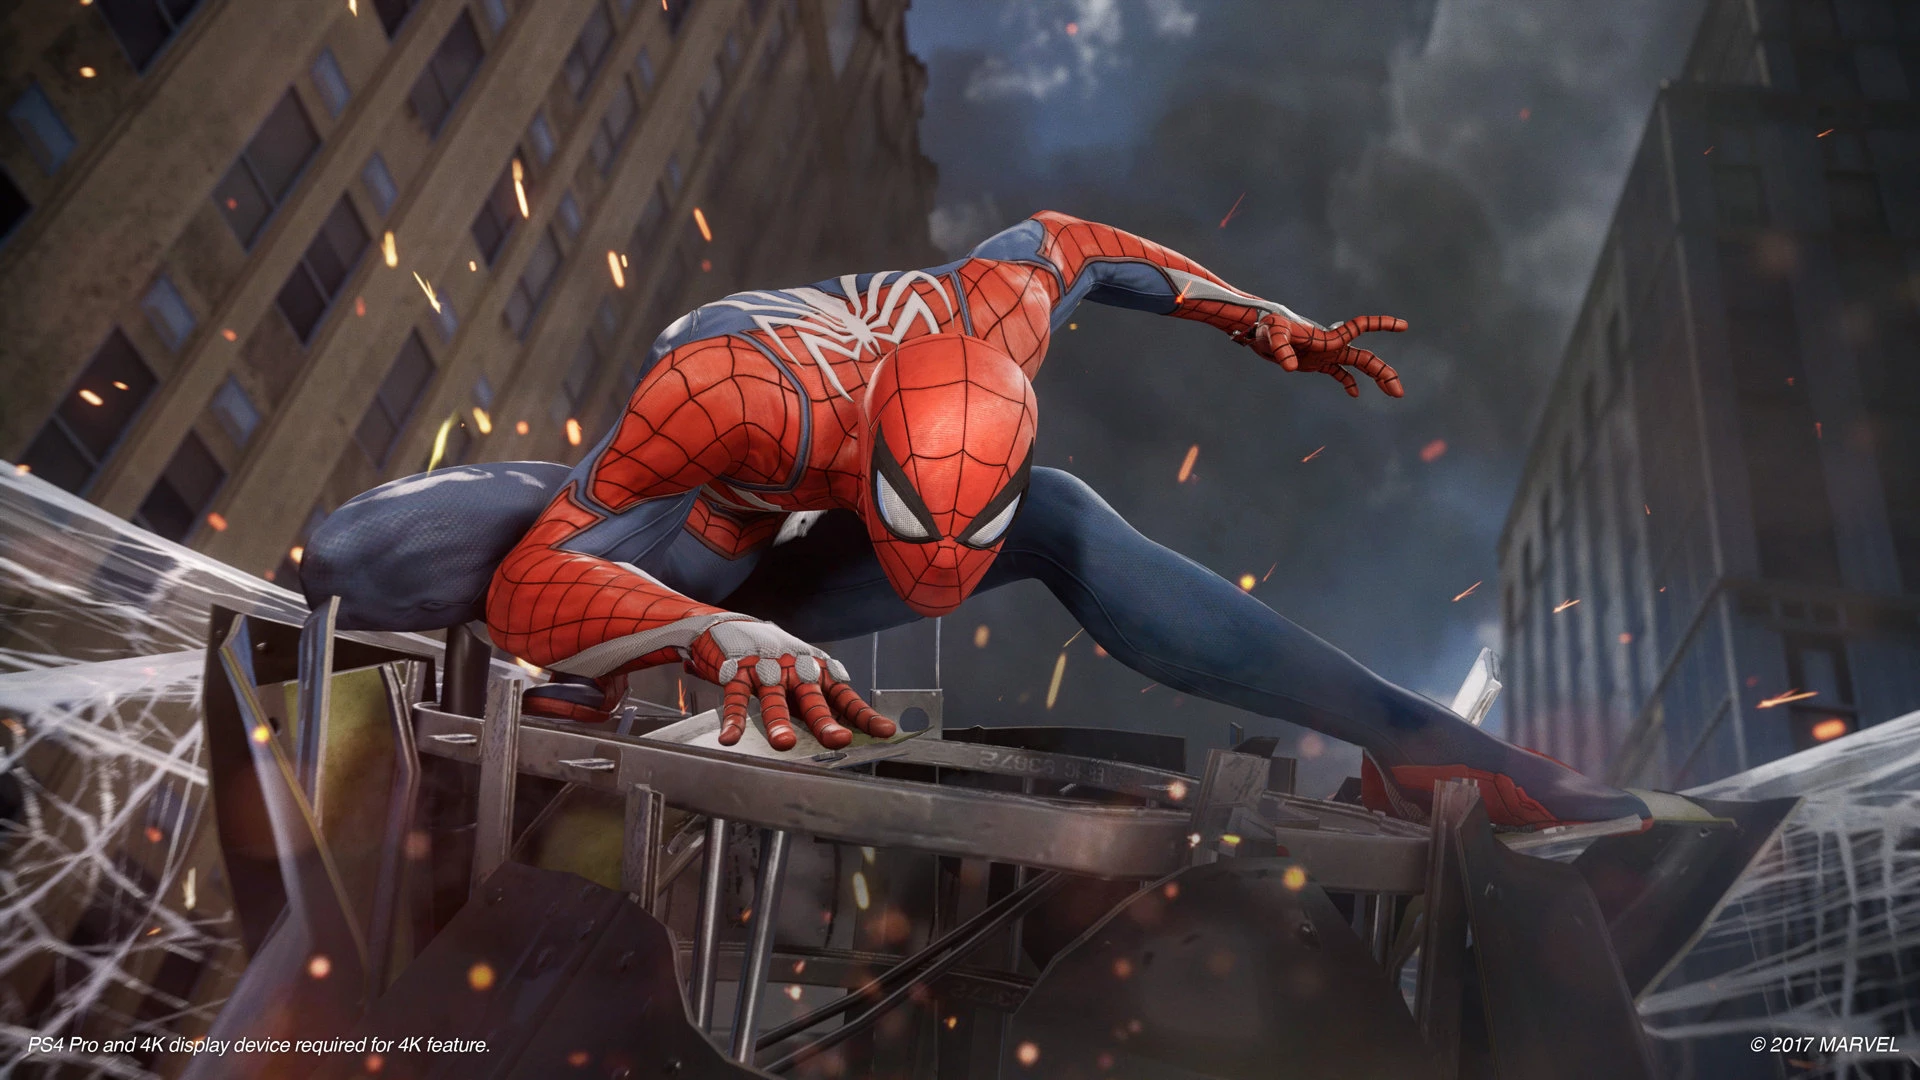 Spider-Man voor de PlayStation 4 kopen op nedgame.nl